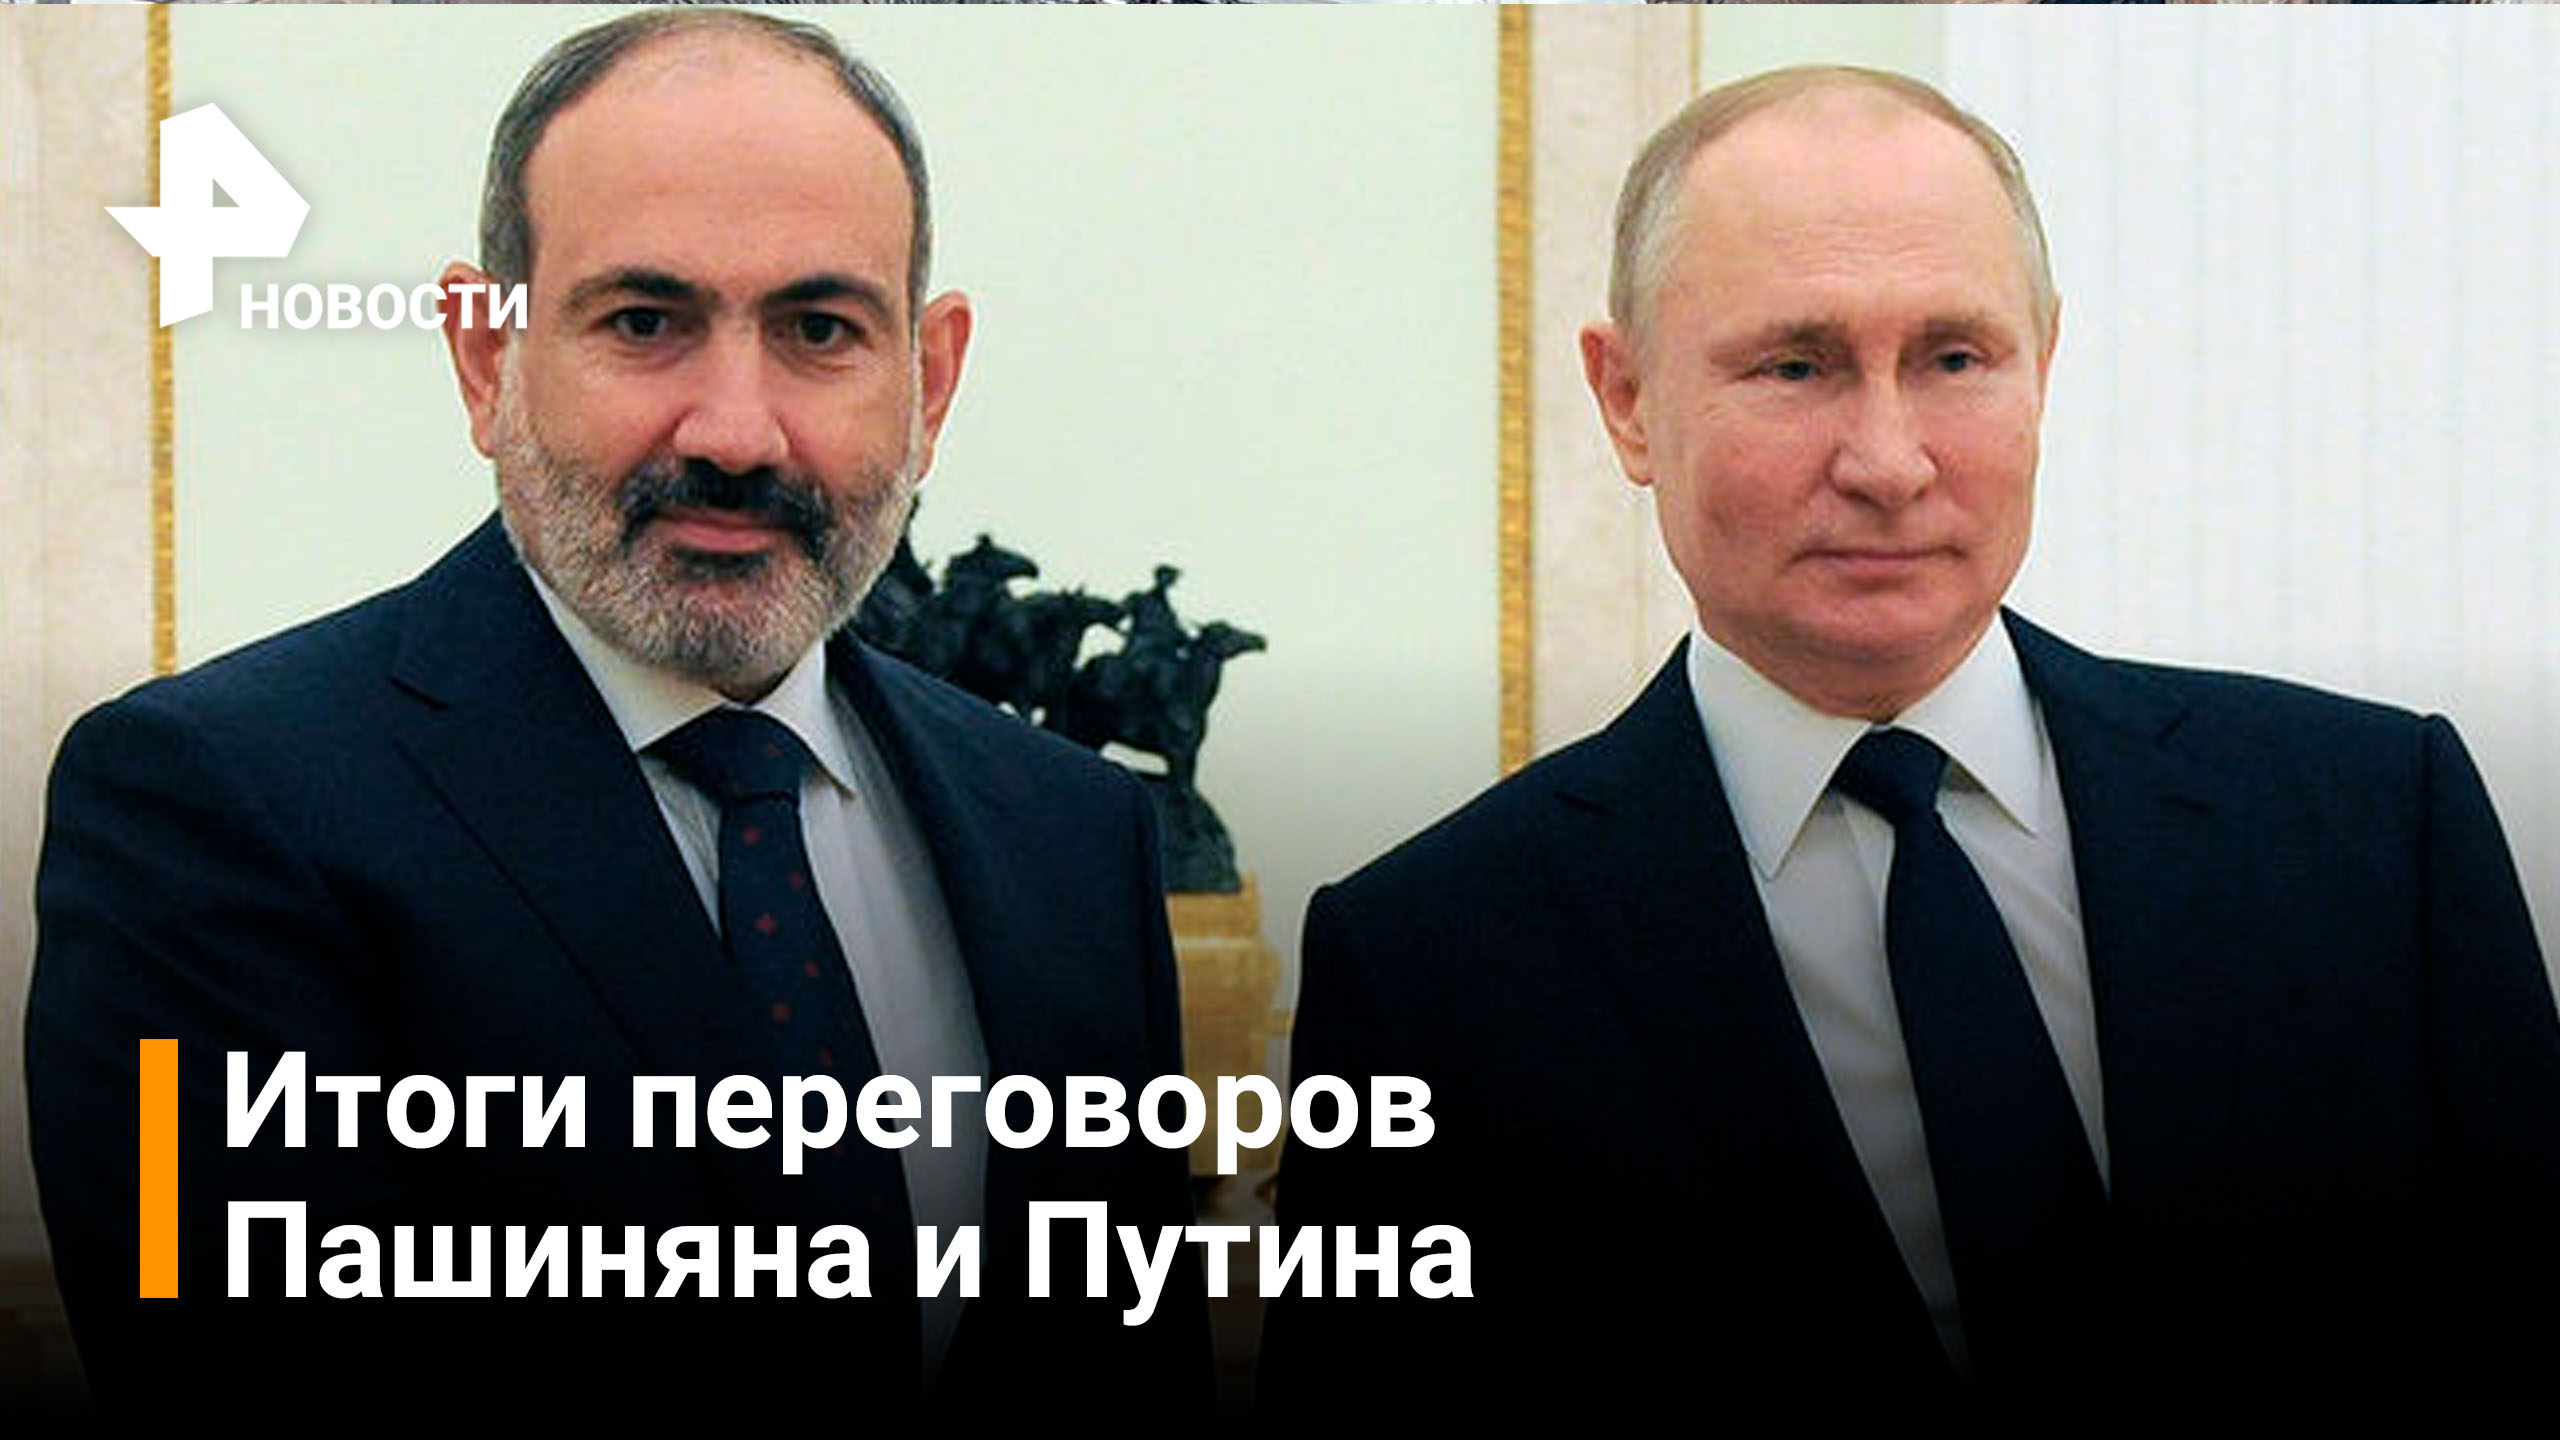 Пашинян отметил особую роль Путина в мирном процессе в Карабахе / РЕН Новости